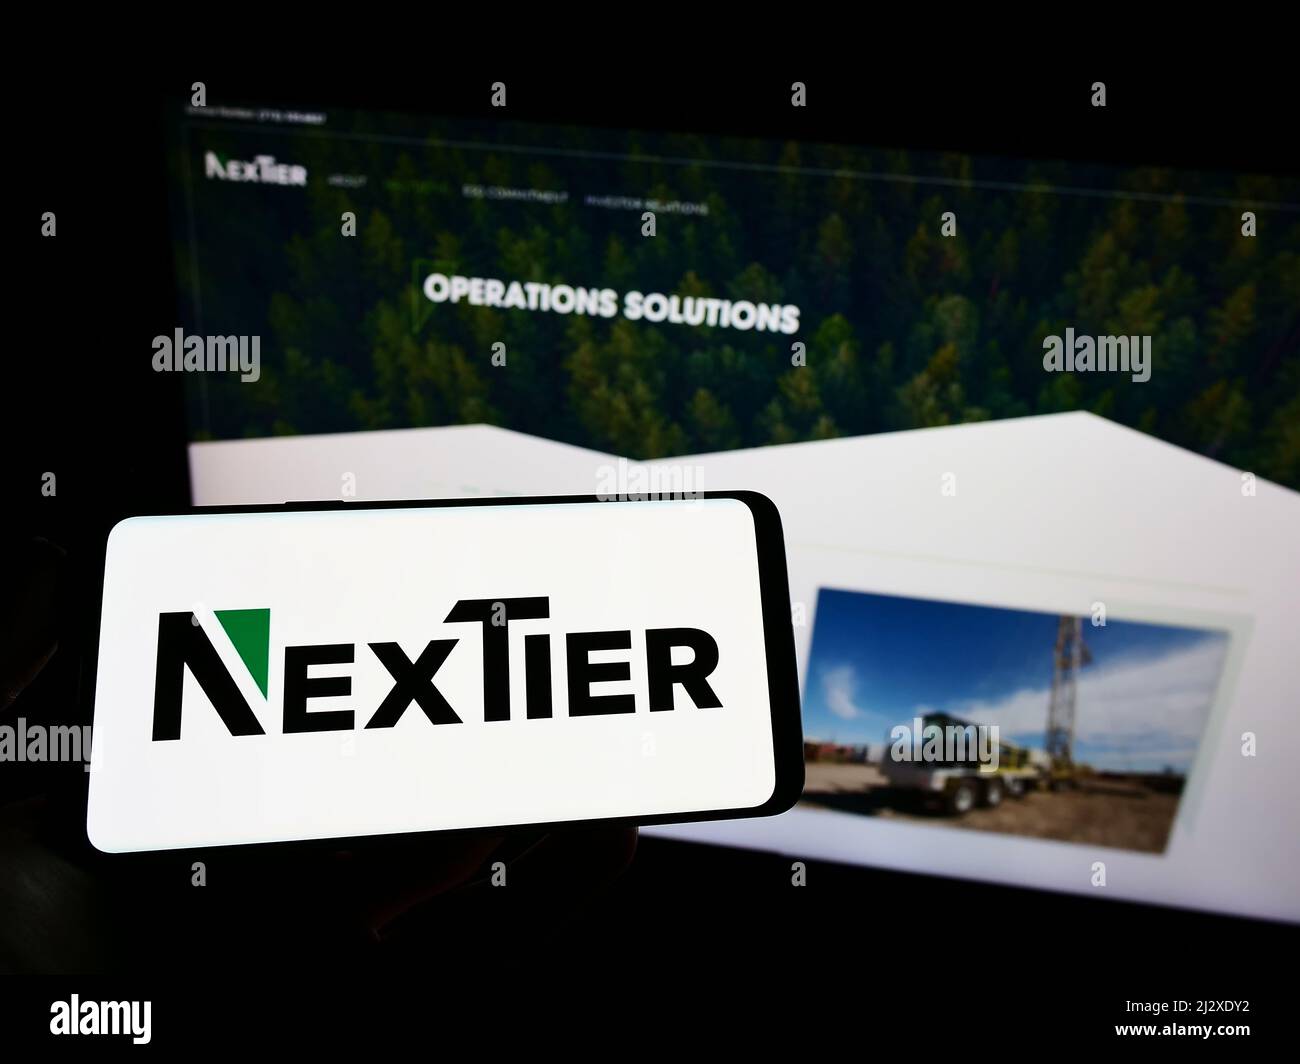 Persona que sostiene el teléfono móvil con el logotipo de la compañía americana NexTier Oilfield Solutions Inc. En la pantalla delante de la página web. Enfoque en la pantalla del teléfono. Foto de stock